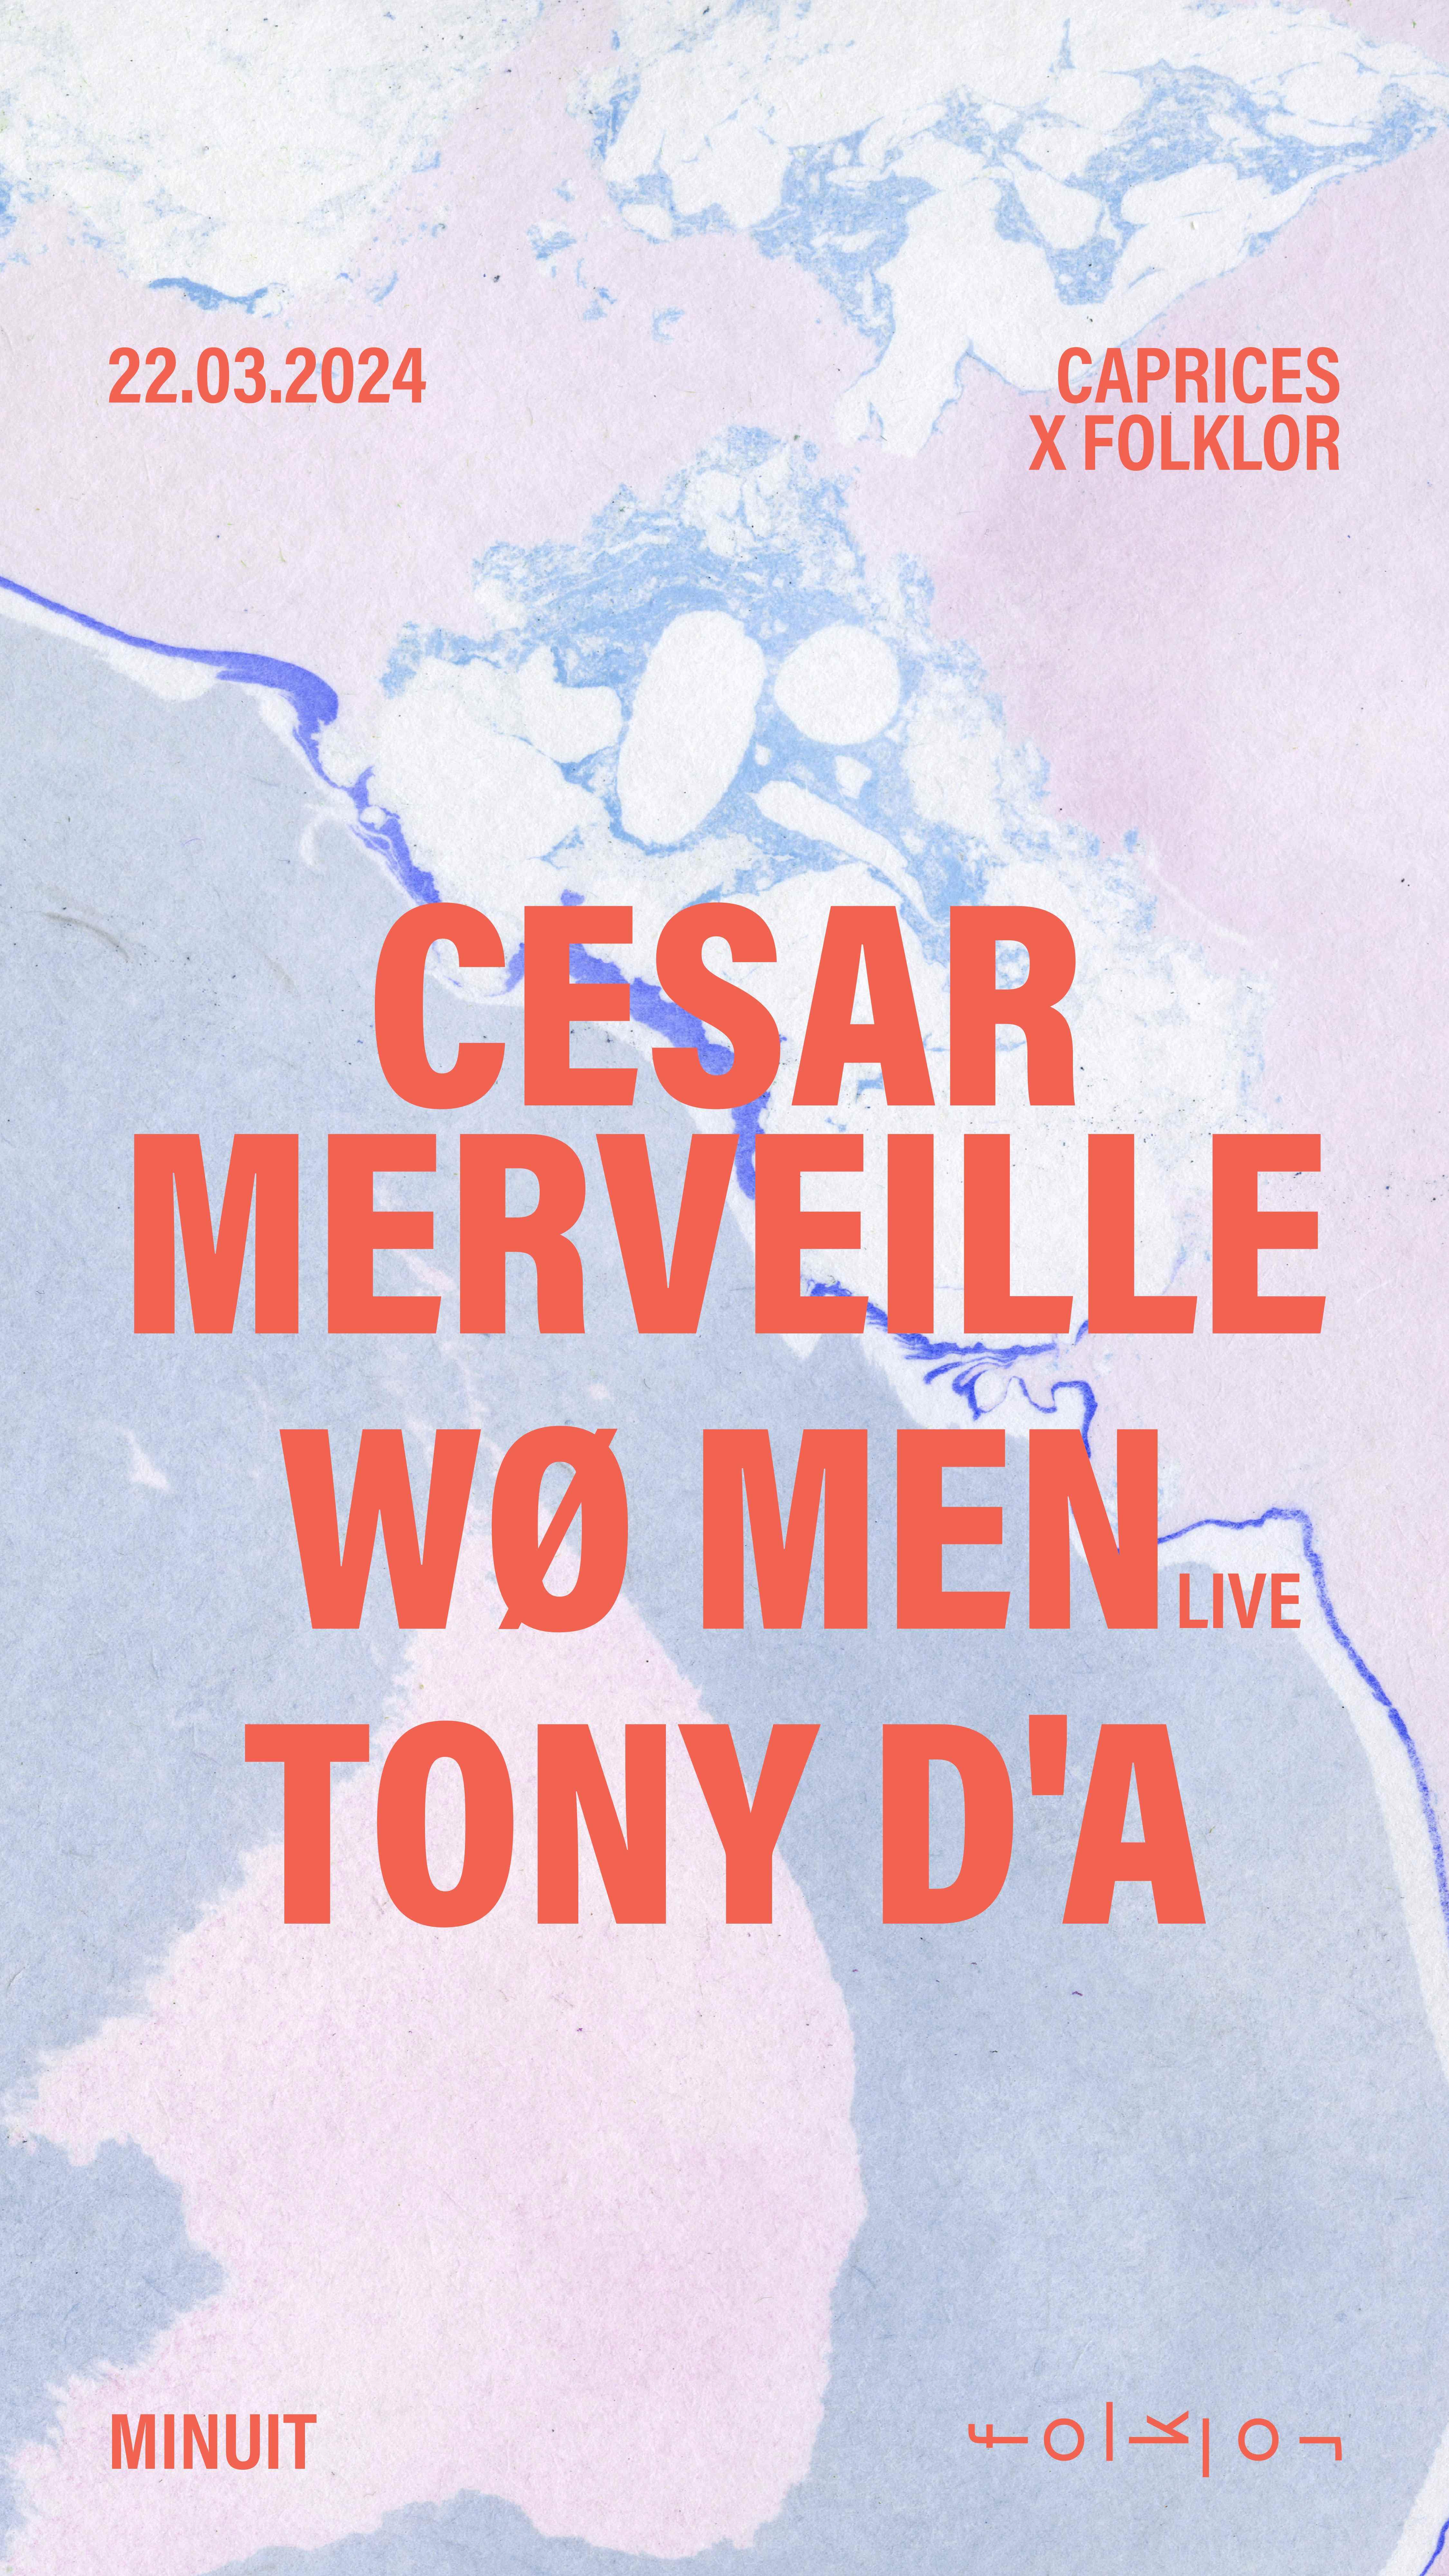 Caprices x Folklor /// WØ MEN - Cesar Merveille - Tony D'A - Página frontal